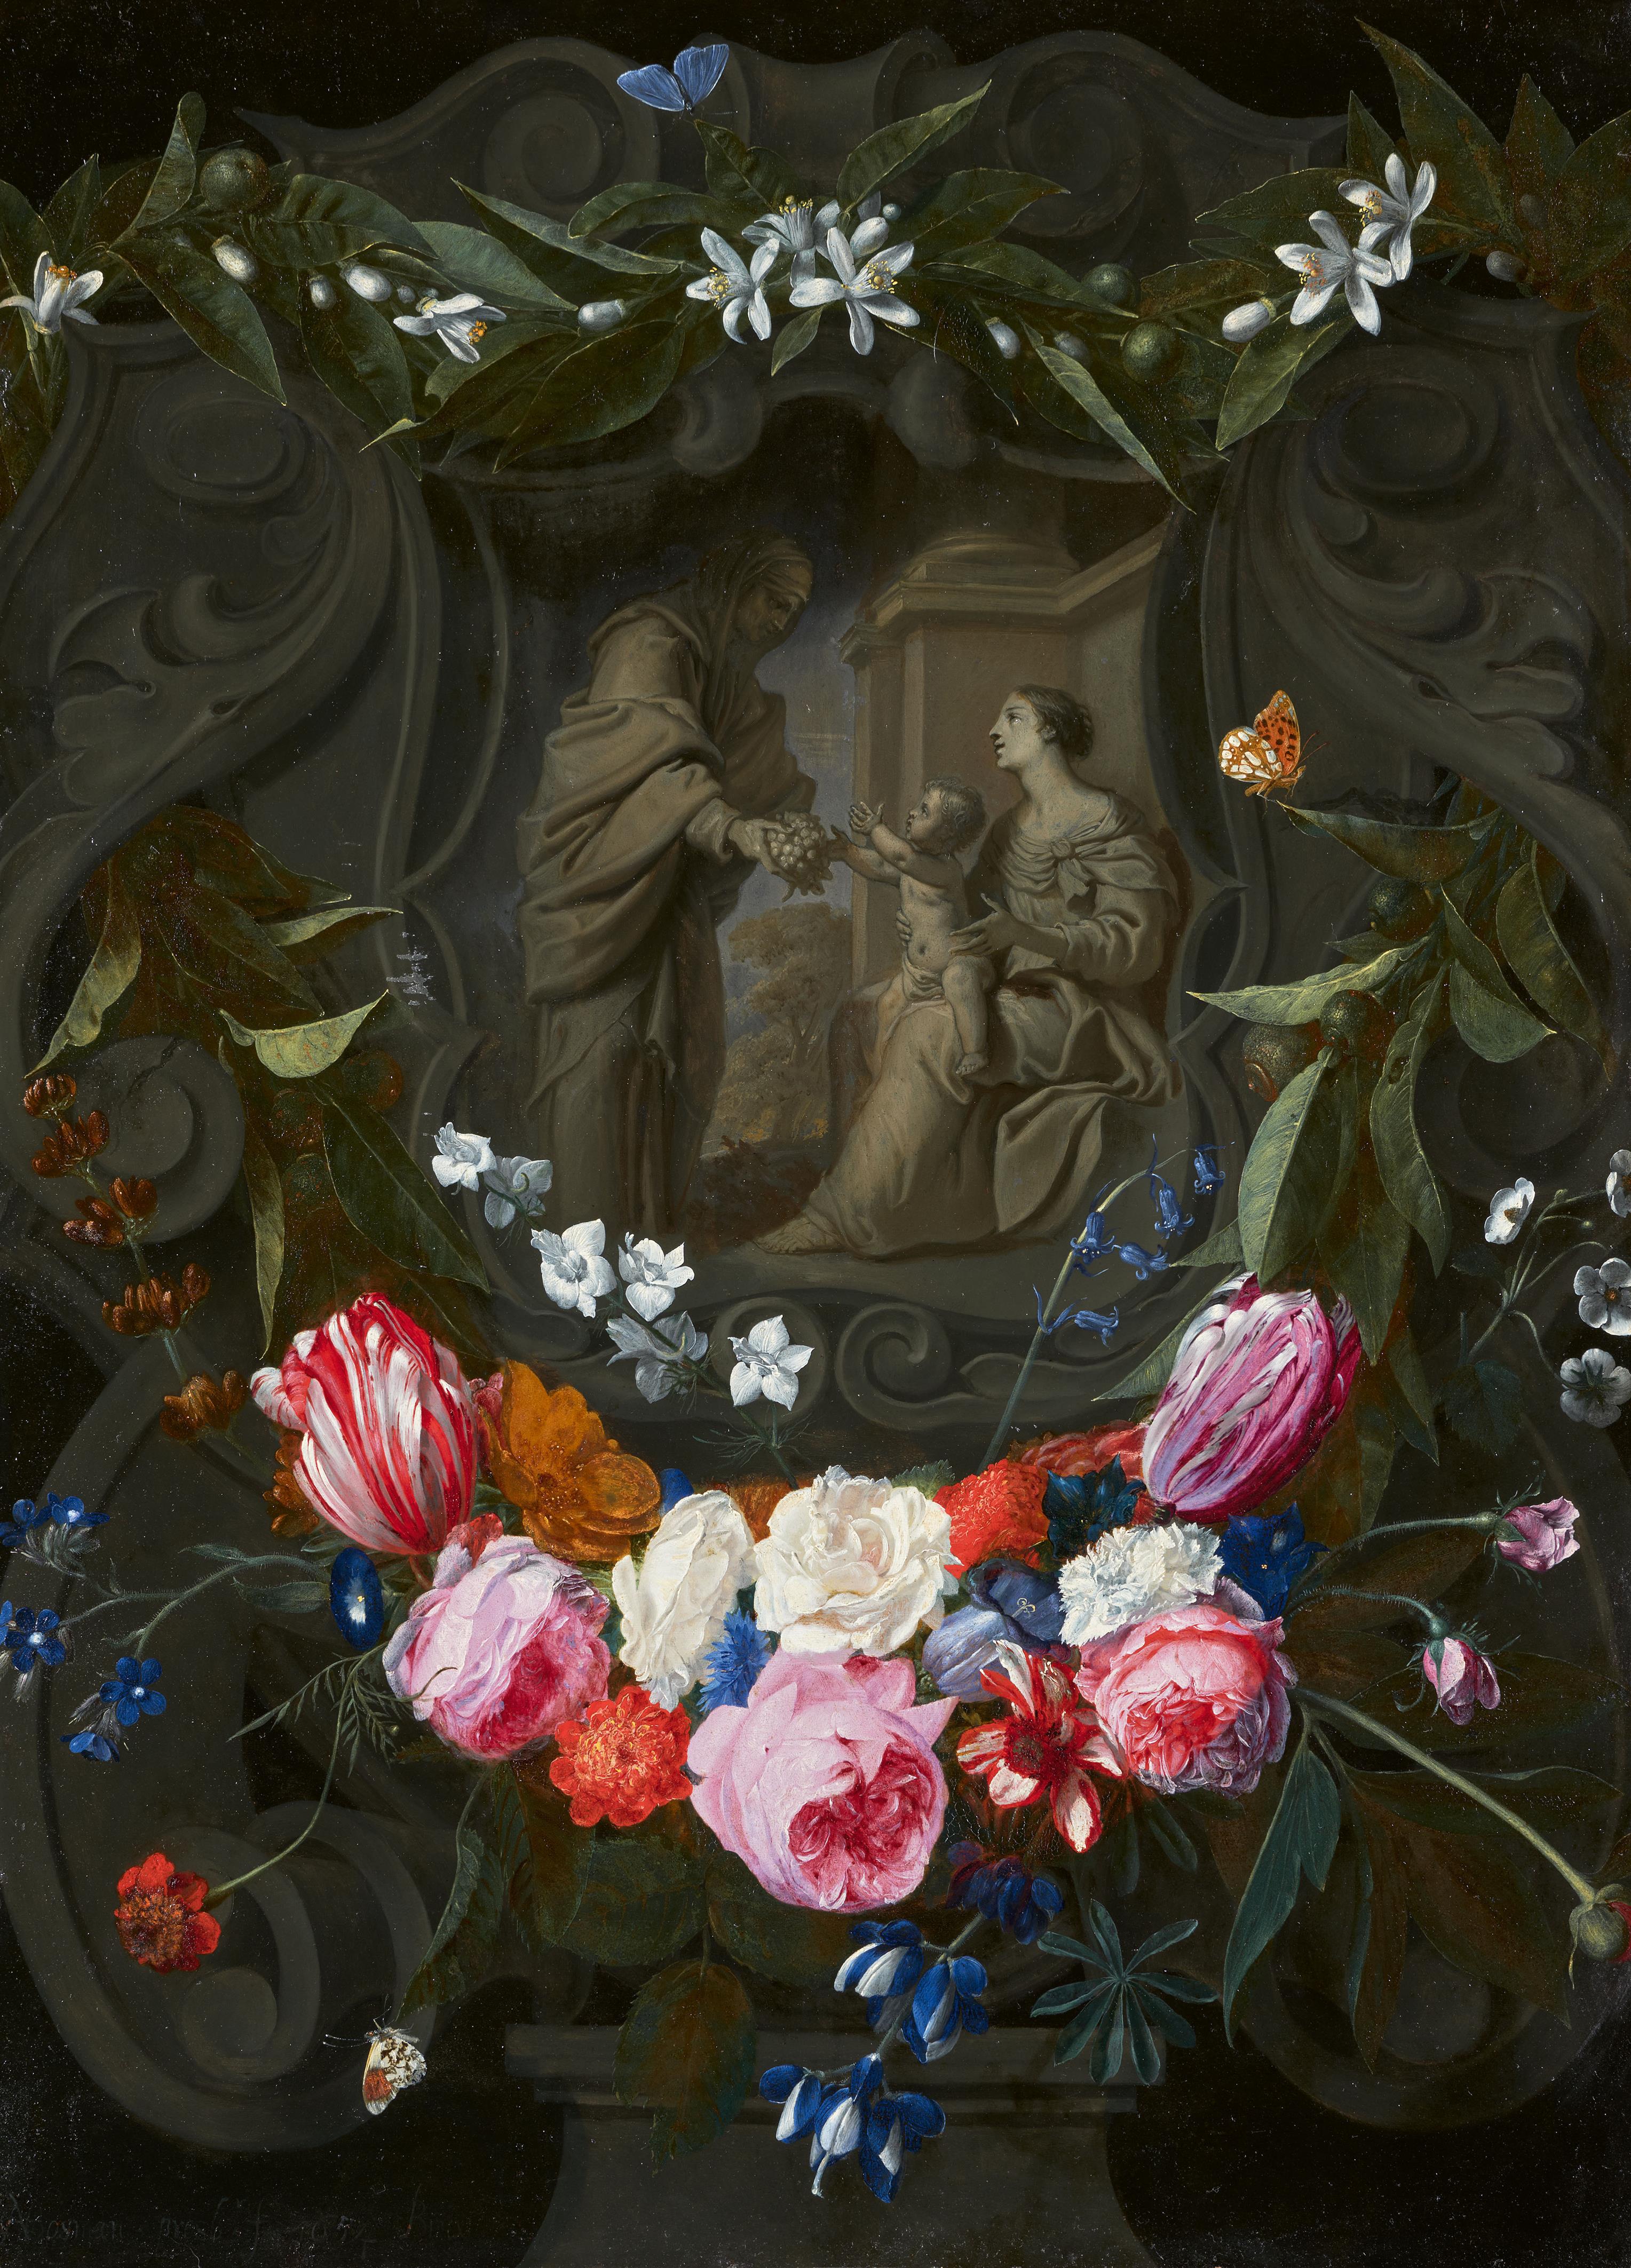 André Bosman - Die Hl. Anna überreicht Trauben an Maria mit dem Kind. Grisaillemalerei in einer Kartusche umgeben von Blumengirlanden - image-1